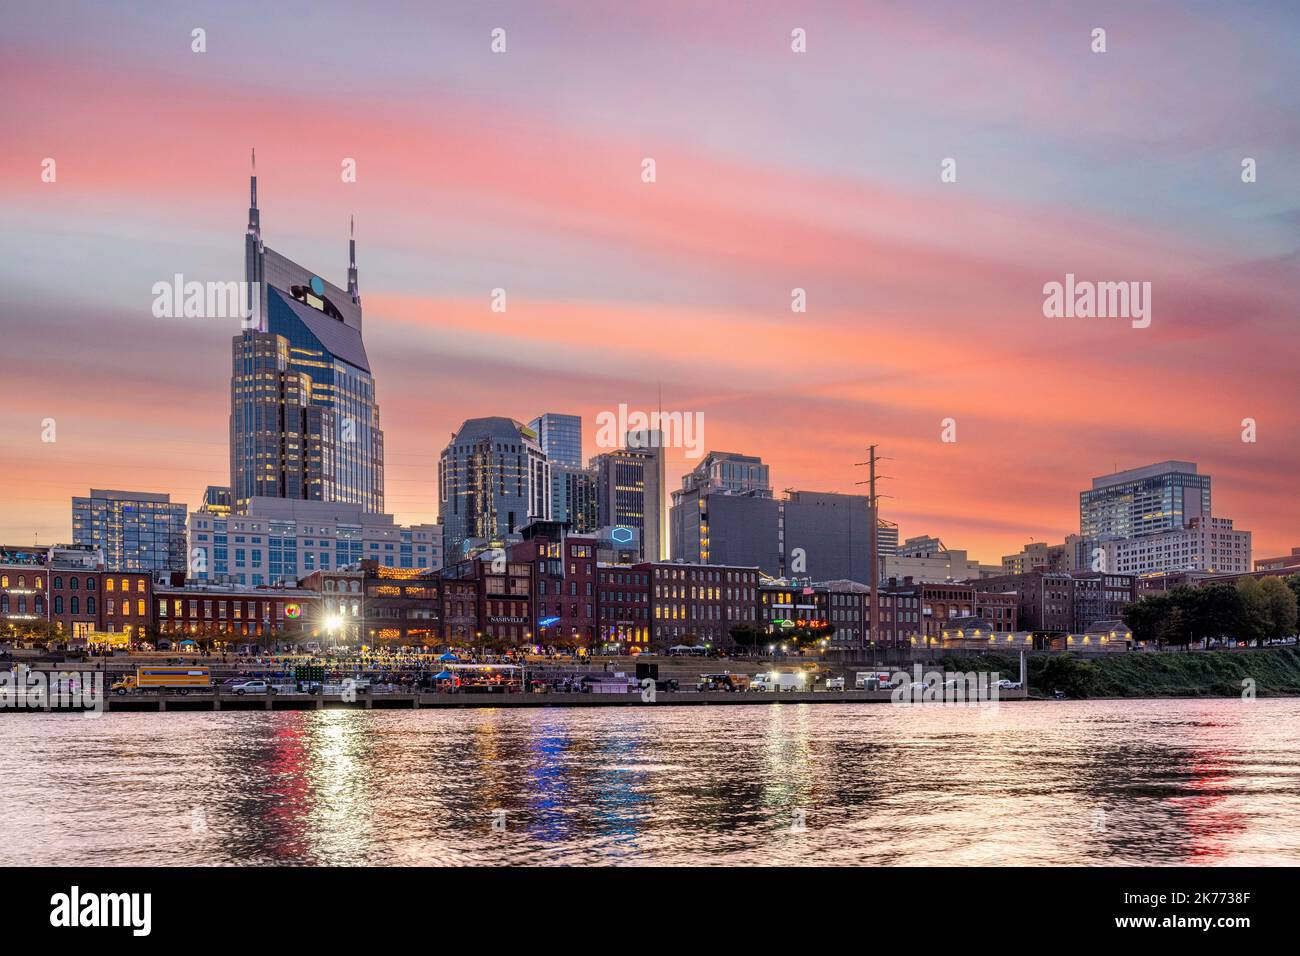 Belle image du célèbre centre-ville de Nashville sur le bord de la rivière montrant l'attraction touristique historique encadrée de nuages roses et wispy au crépuscule. Banque D'Images